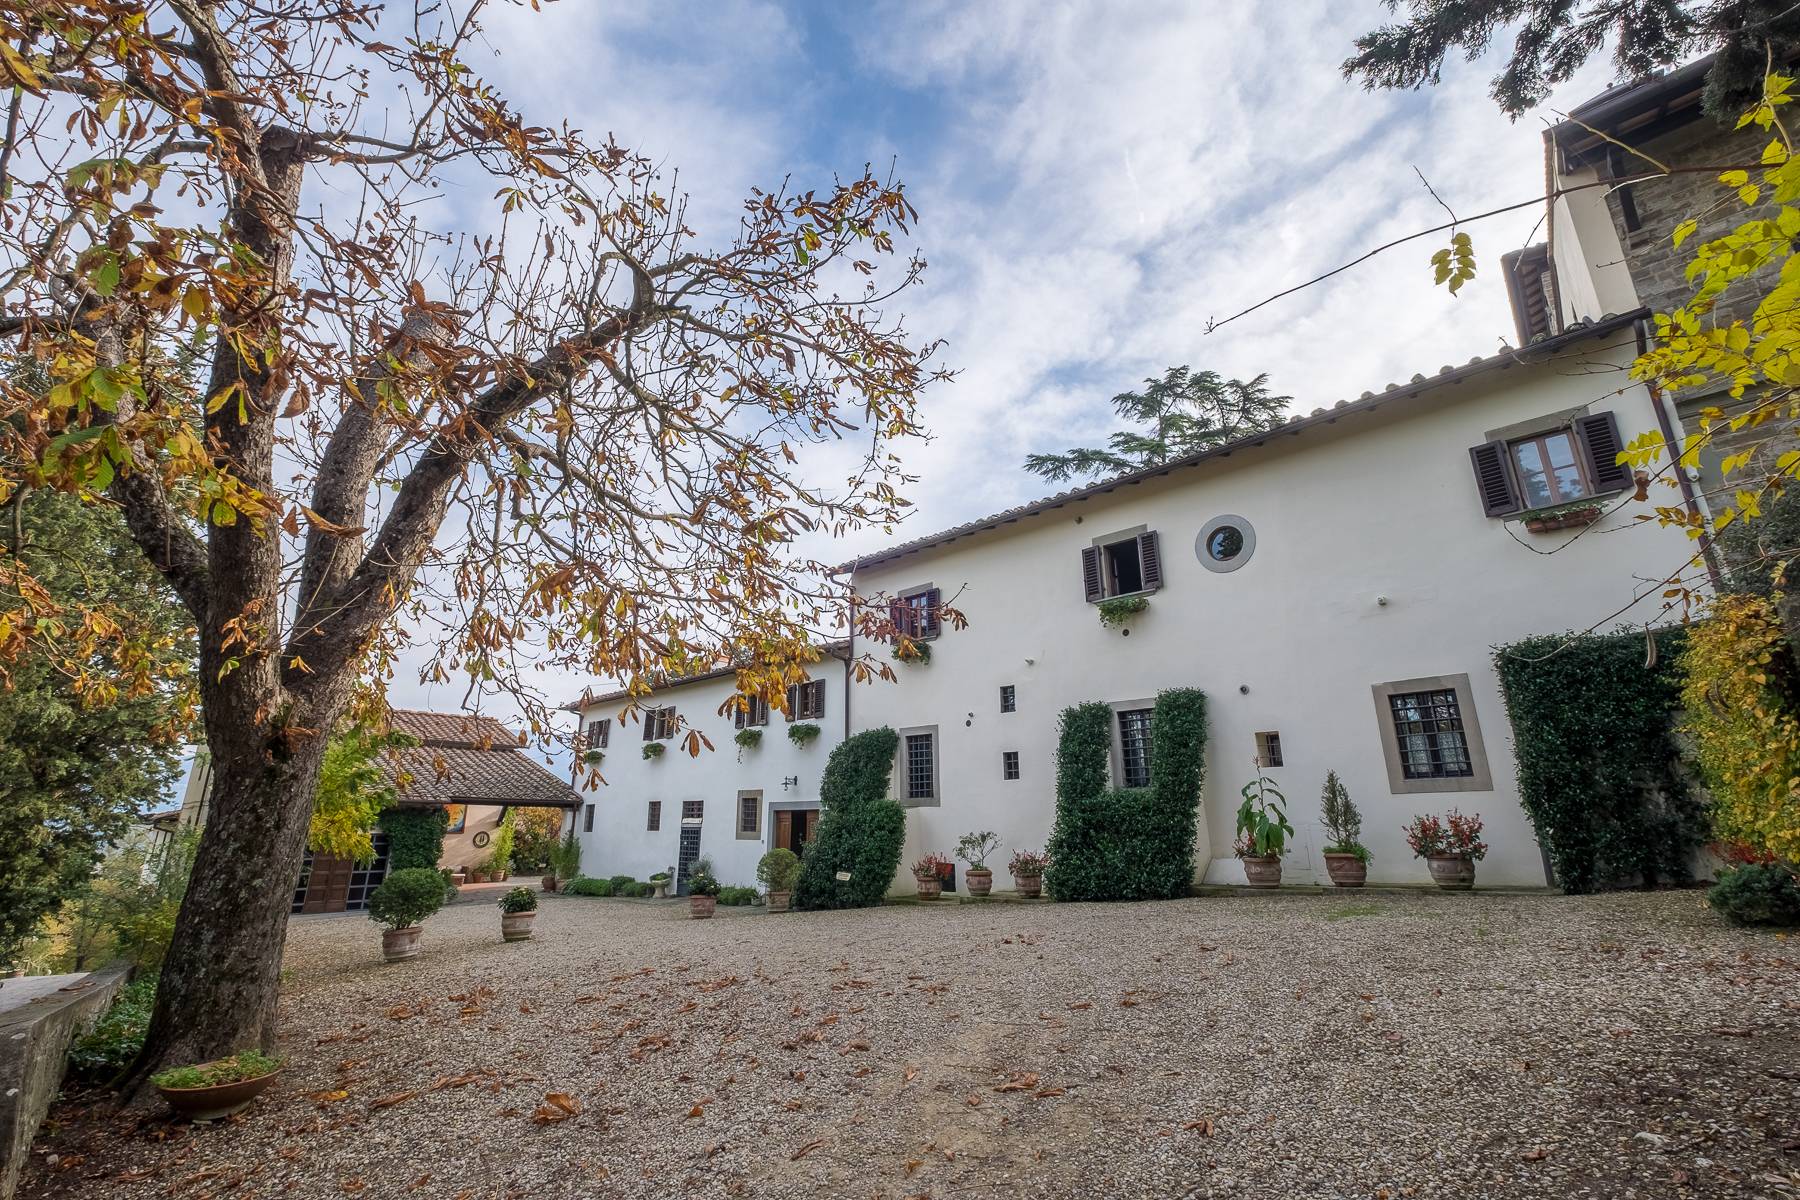 Villa in Vendita a Rignano Sull'Arno: 5 locali, 3000 mq - Foto 3